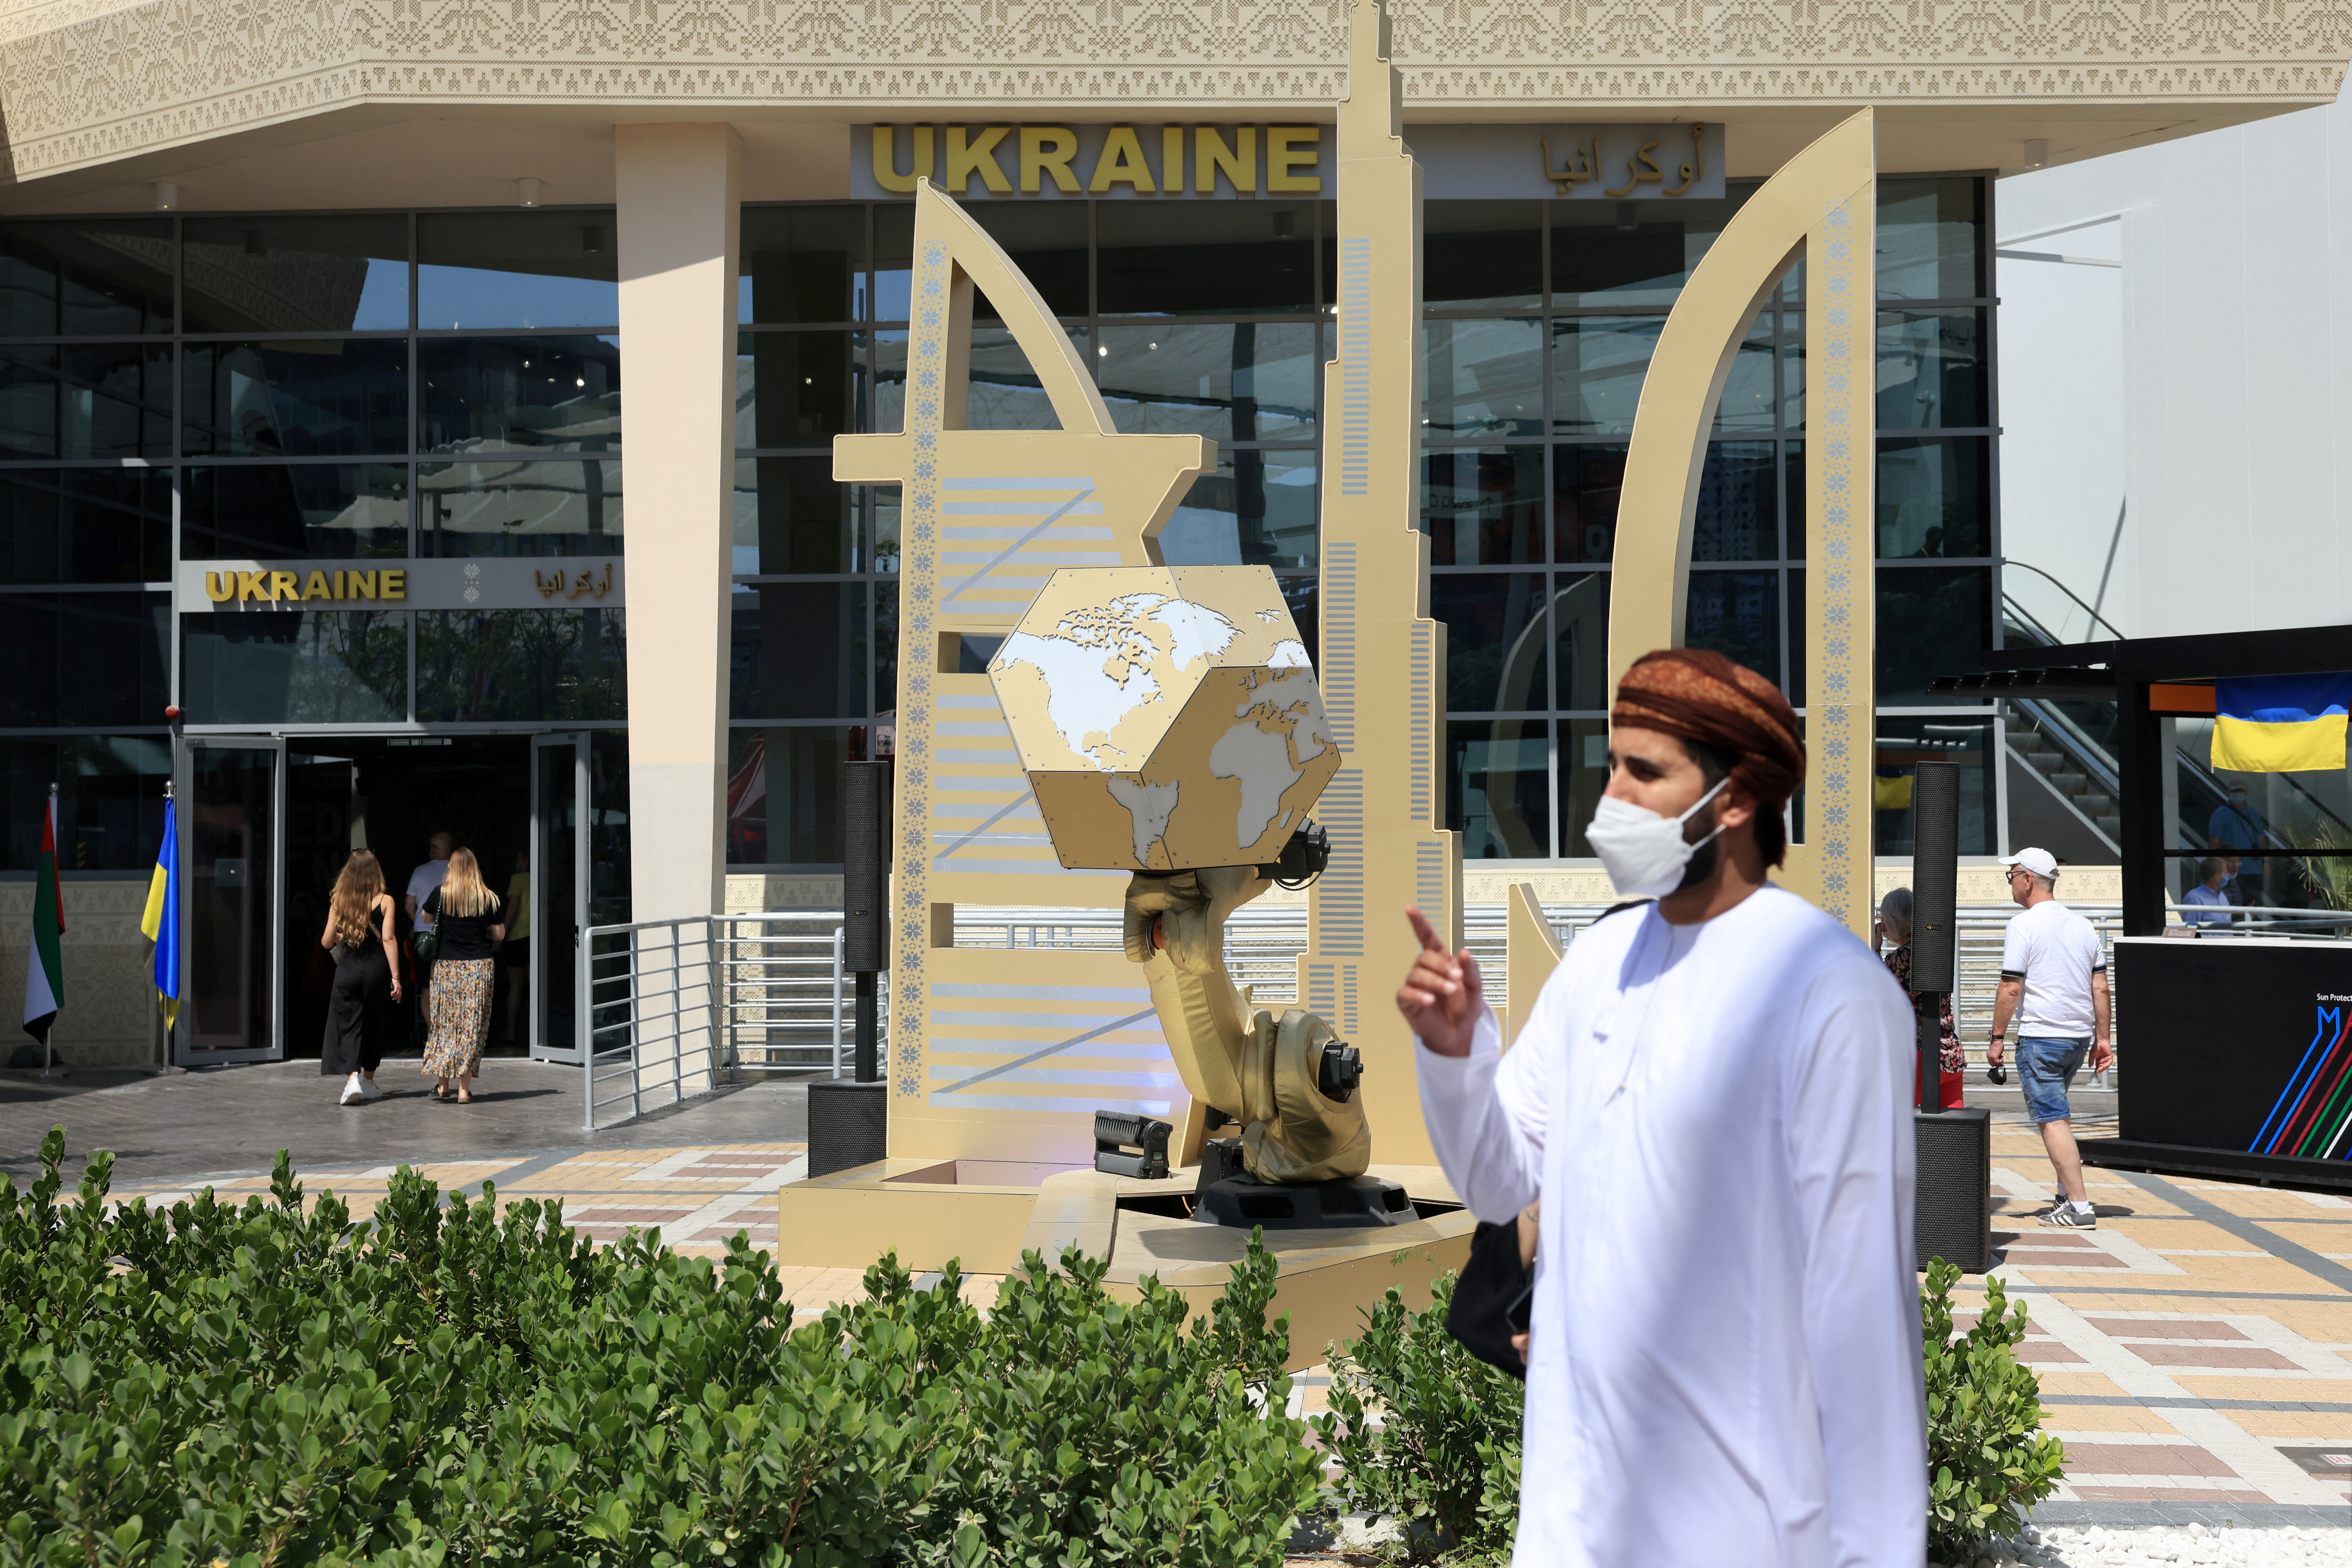 Ukraine pavilion at Expo 2020 in Dubai